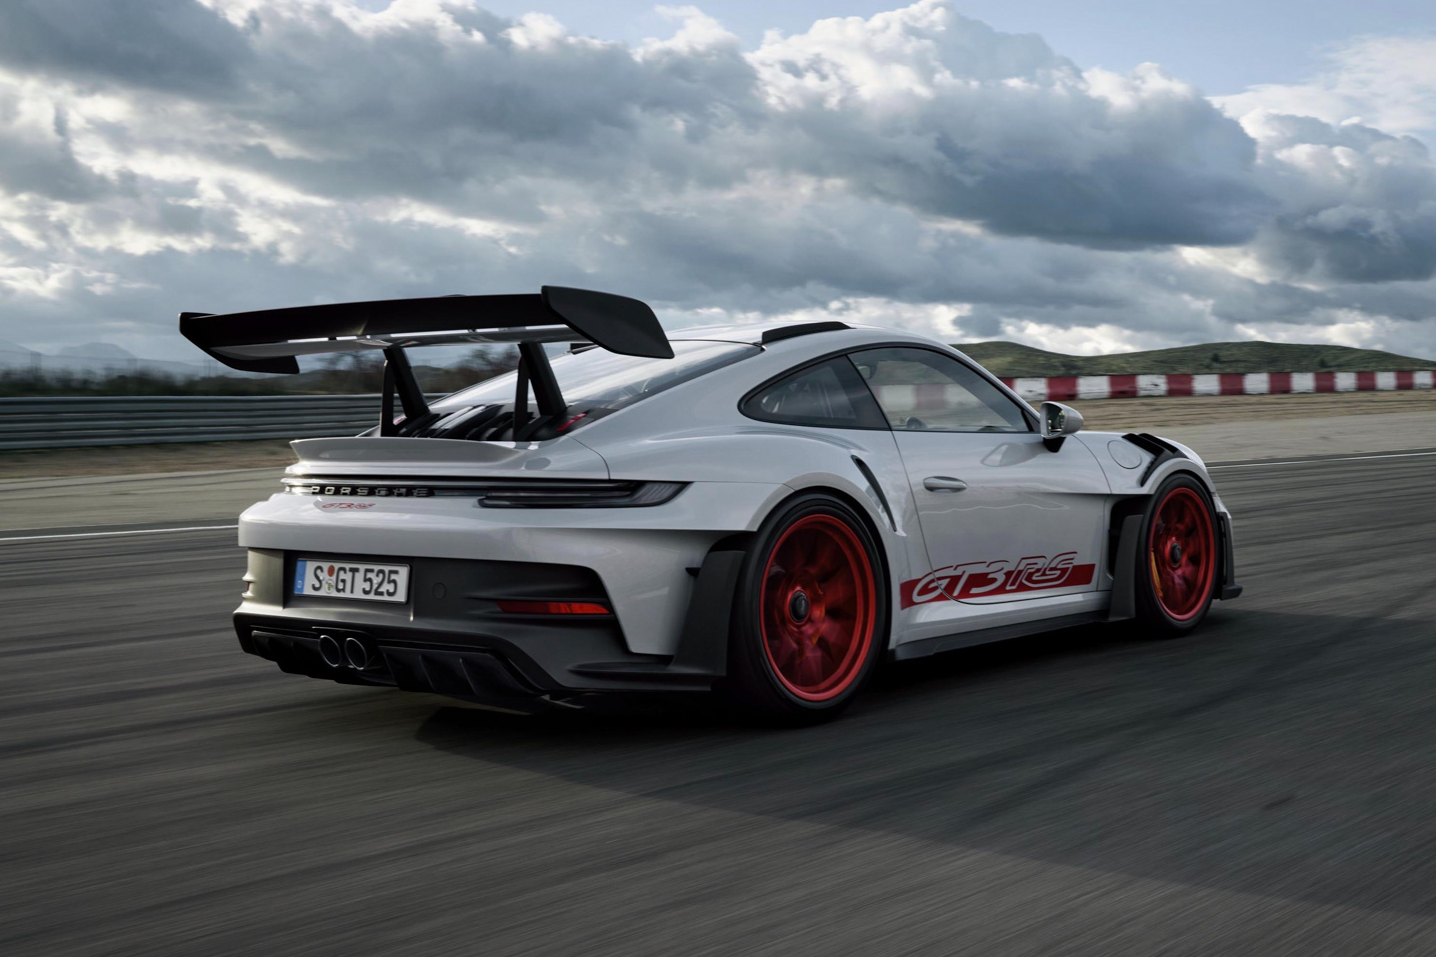 Chi tiết Porsche 911 GT3 RS thế hệ mới - ảnh 2